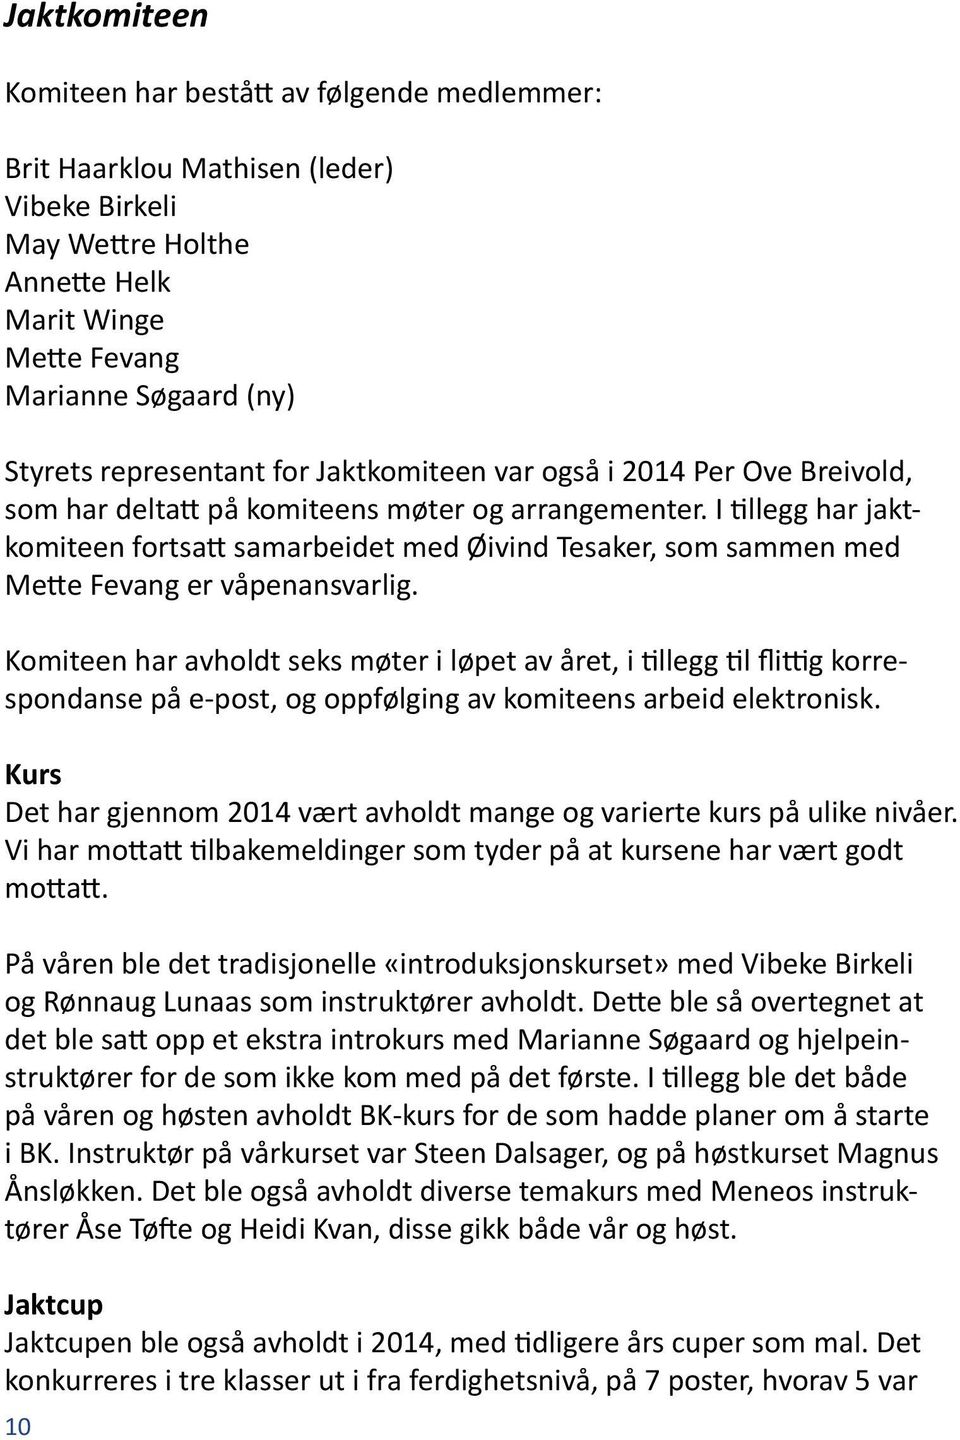 Årsmøte Norsk Retrieverklubb avd. Oslo og omegn 16. mars 2015 kl Røa  Samfunnshus Austliveien 4/Røa torg - PDF Free Download